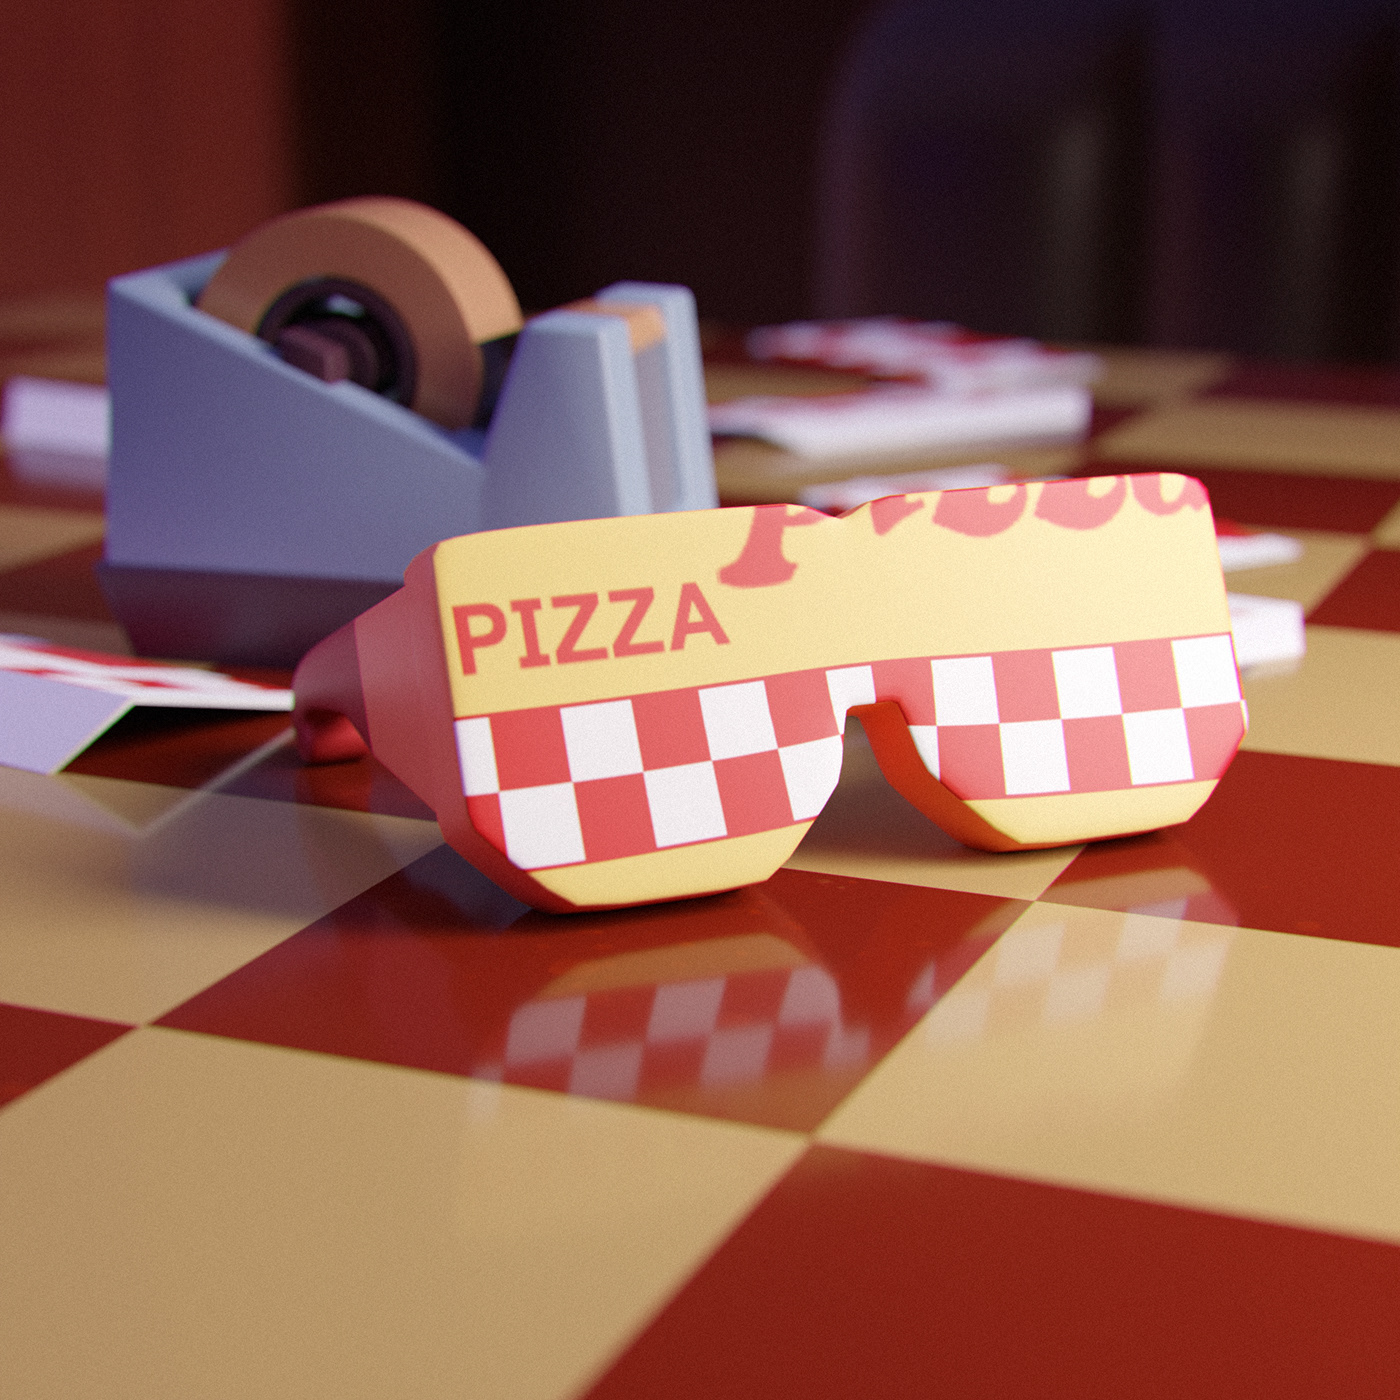 Eleven's pizza glasses